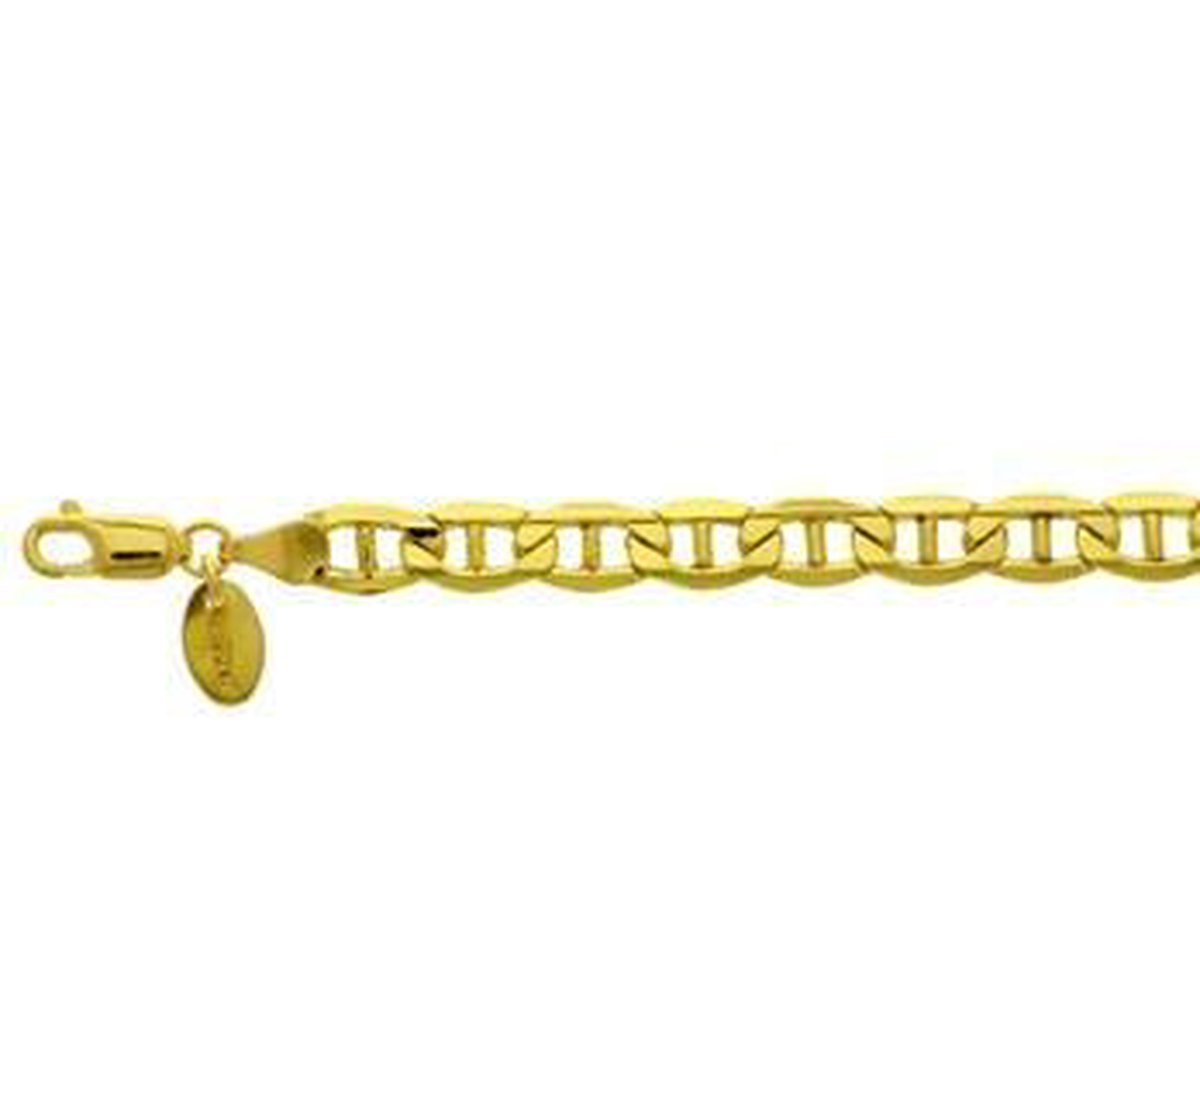 ZilGold 14k gouden anker armband met daarin een kern van 925 zilver.